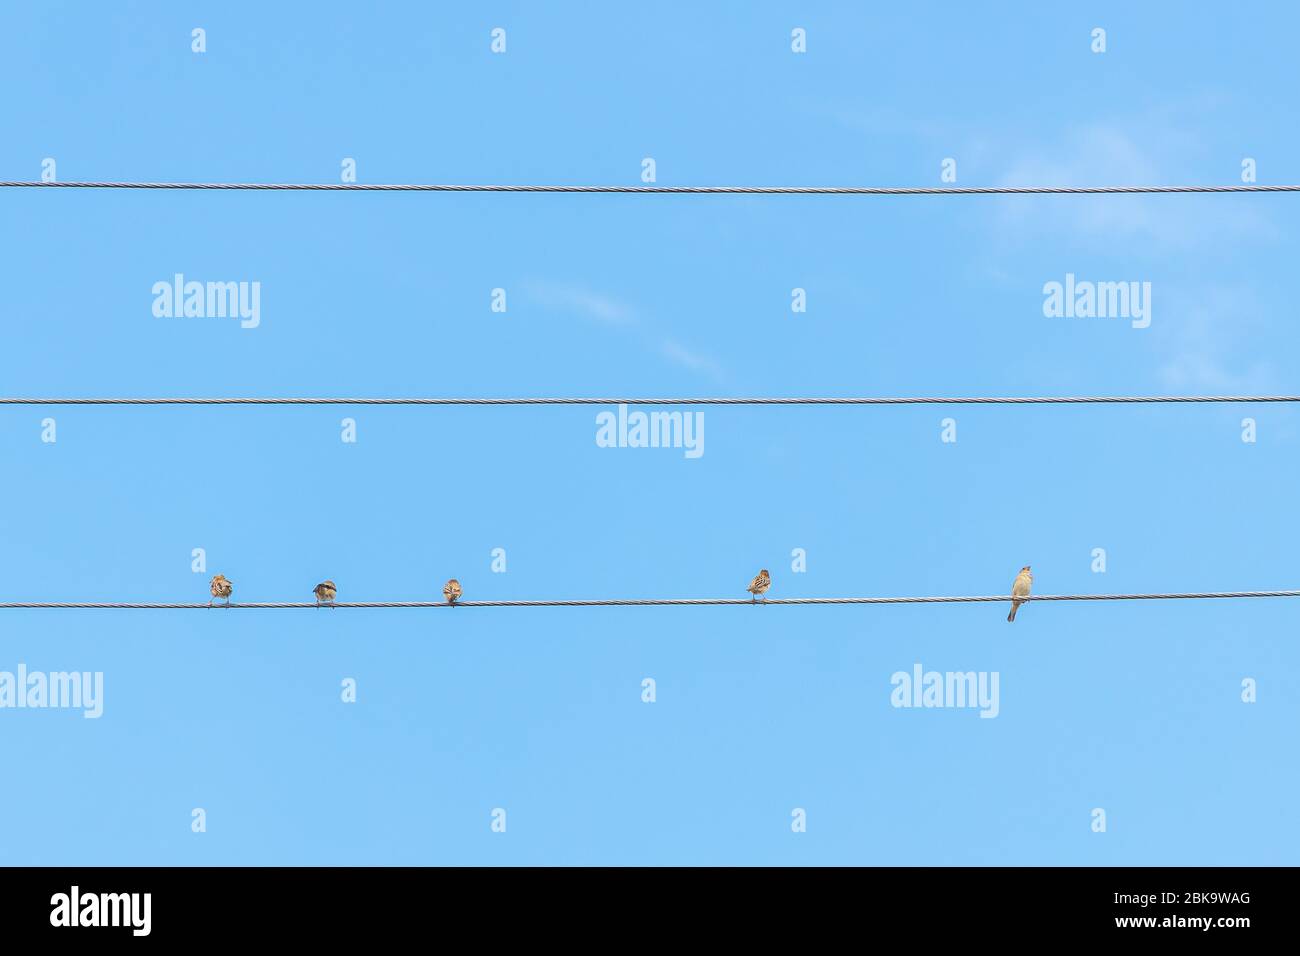 Spatz sitzt auf Draht gegen den blauen Himmel. Drei Vögel sitzen zusammen, zwei sitzen weit voneinander entfernt. Konzept der sozialen Distanzierung. Stockfoto